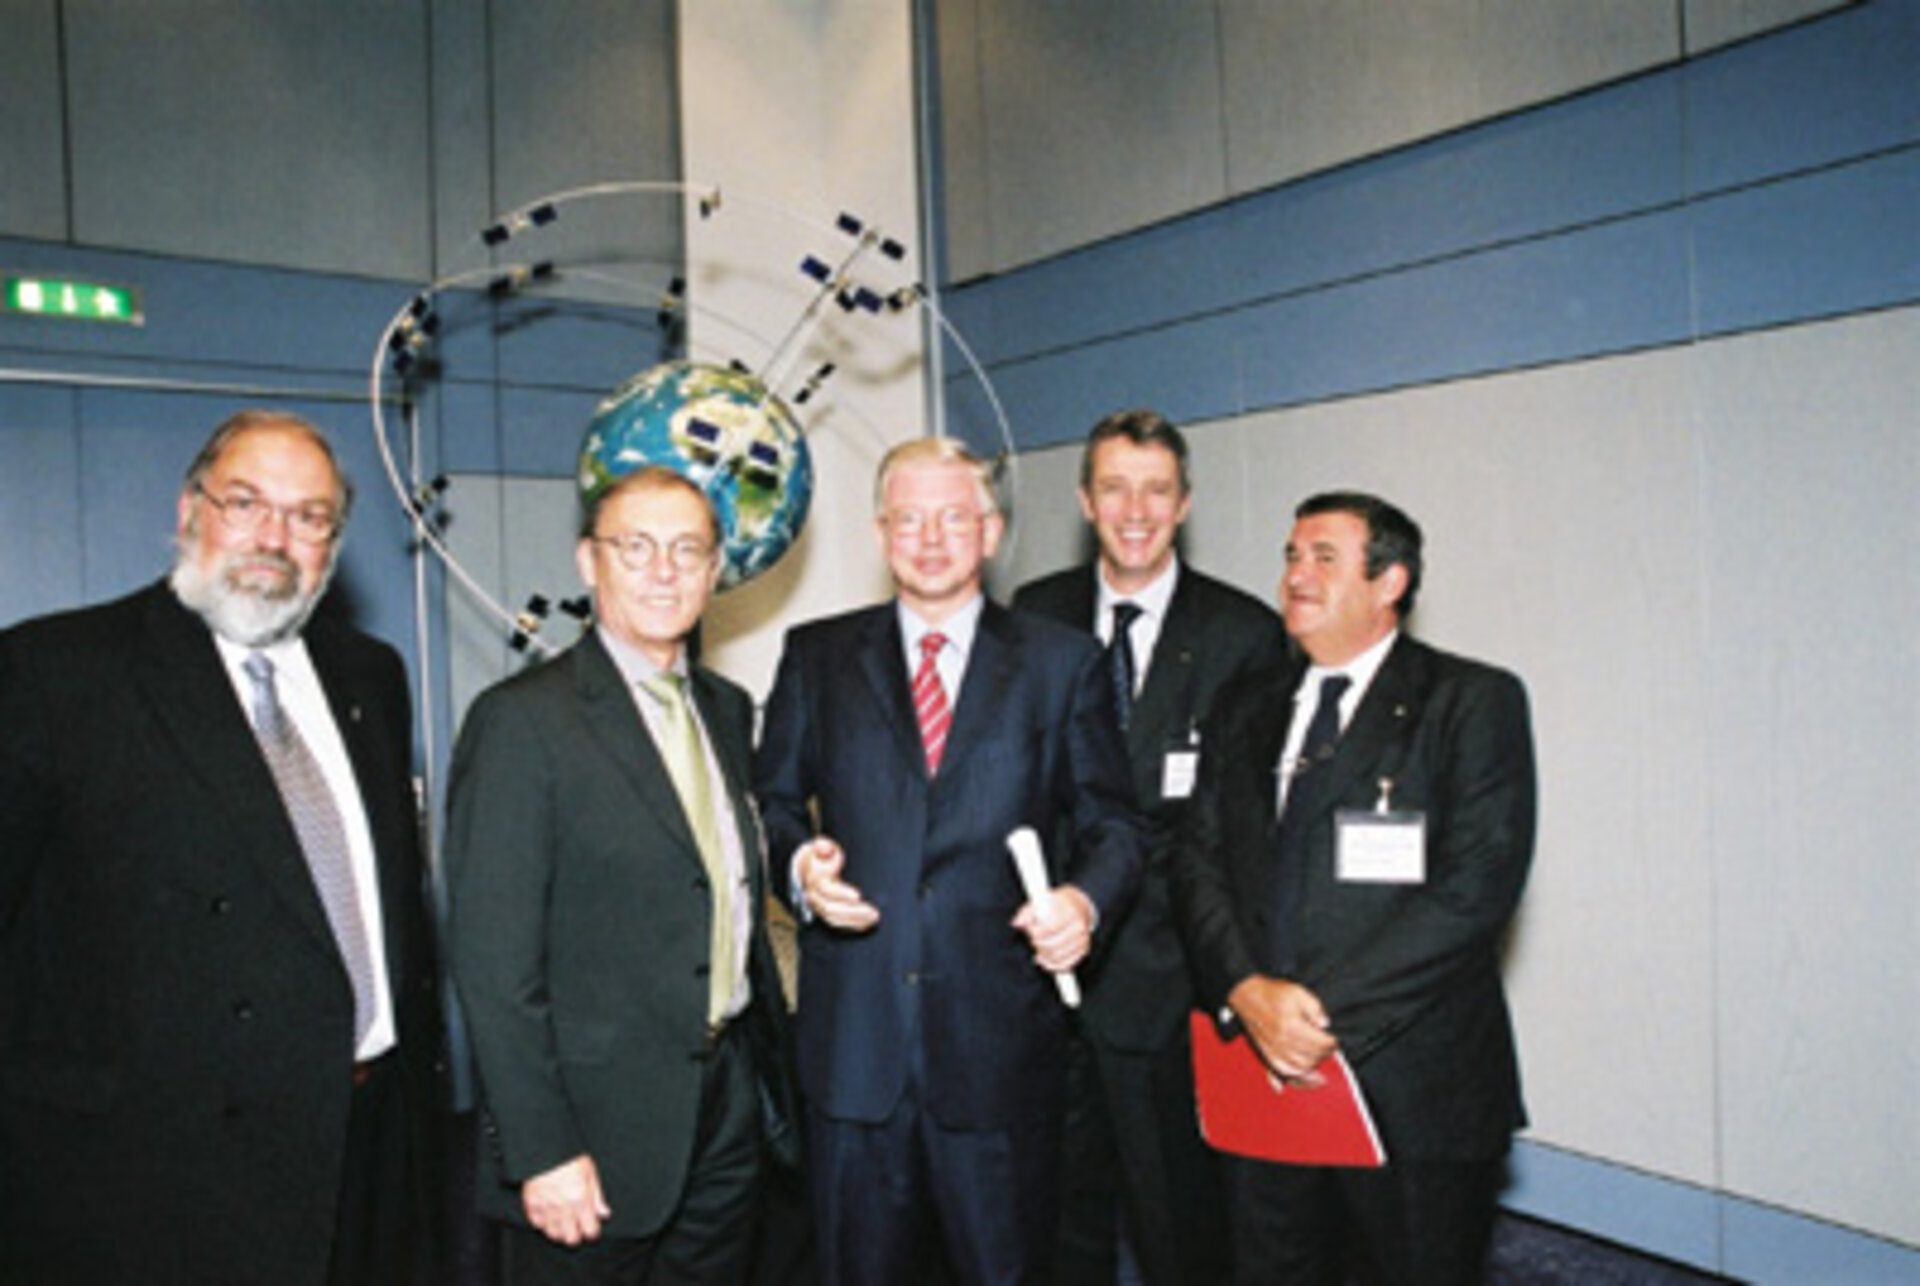 Prominente Politiker und führende Raumfahrtmanager im ESOC